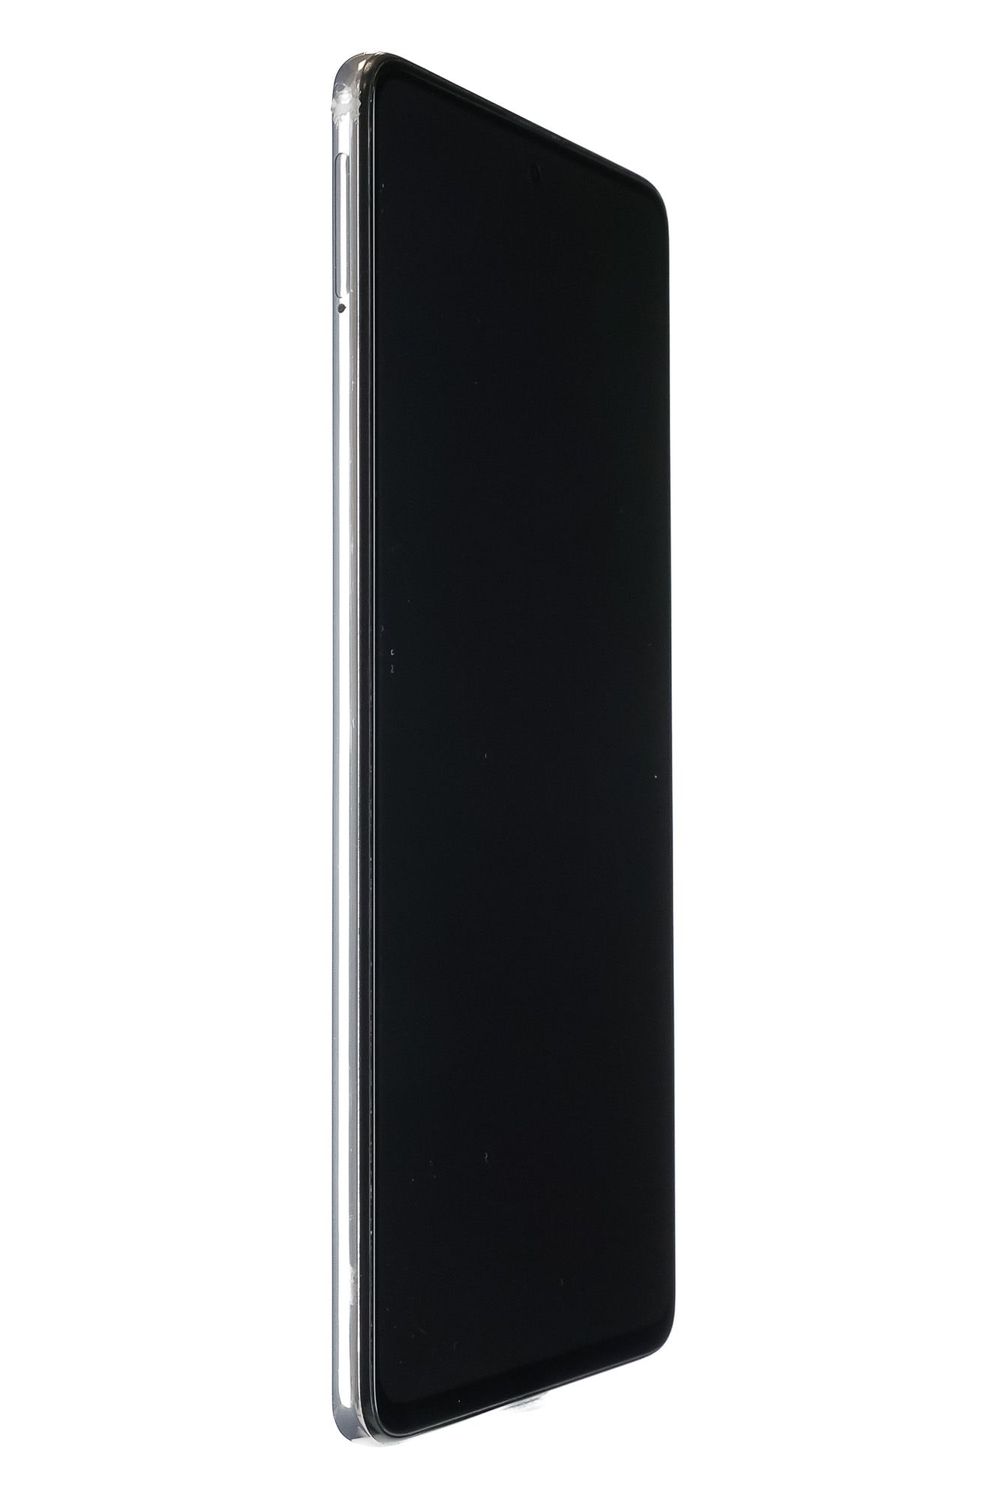 Κινητό τηλέφωνο Samsung Galaxy A51 Dual Sim, White, 64 GB, Bun